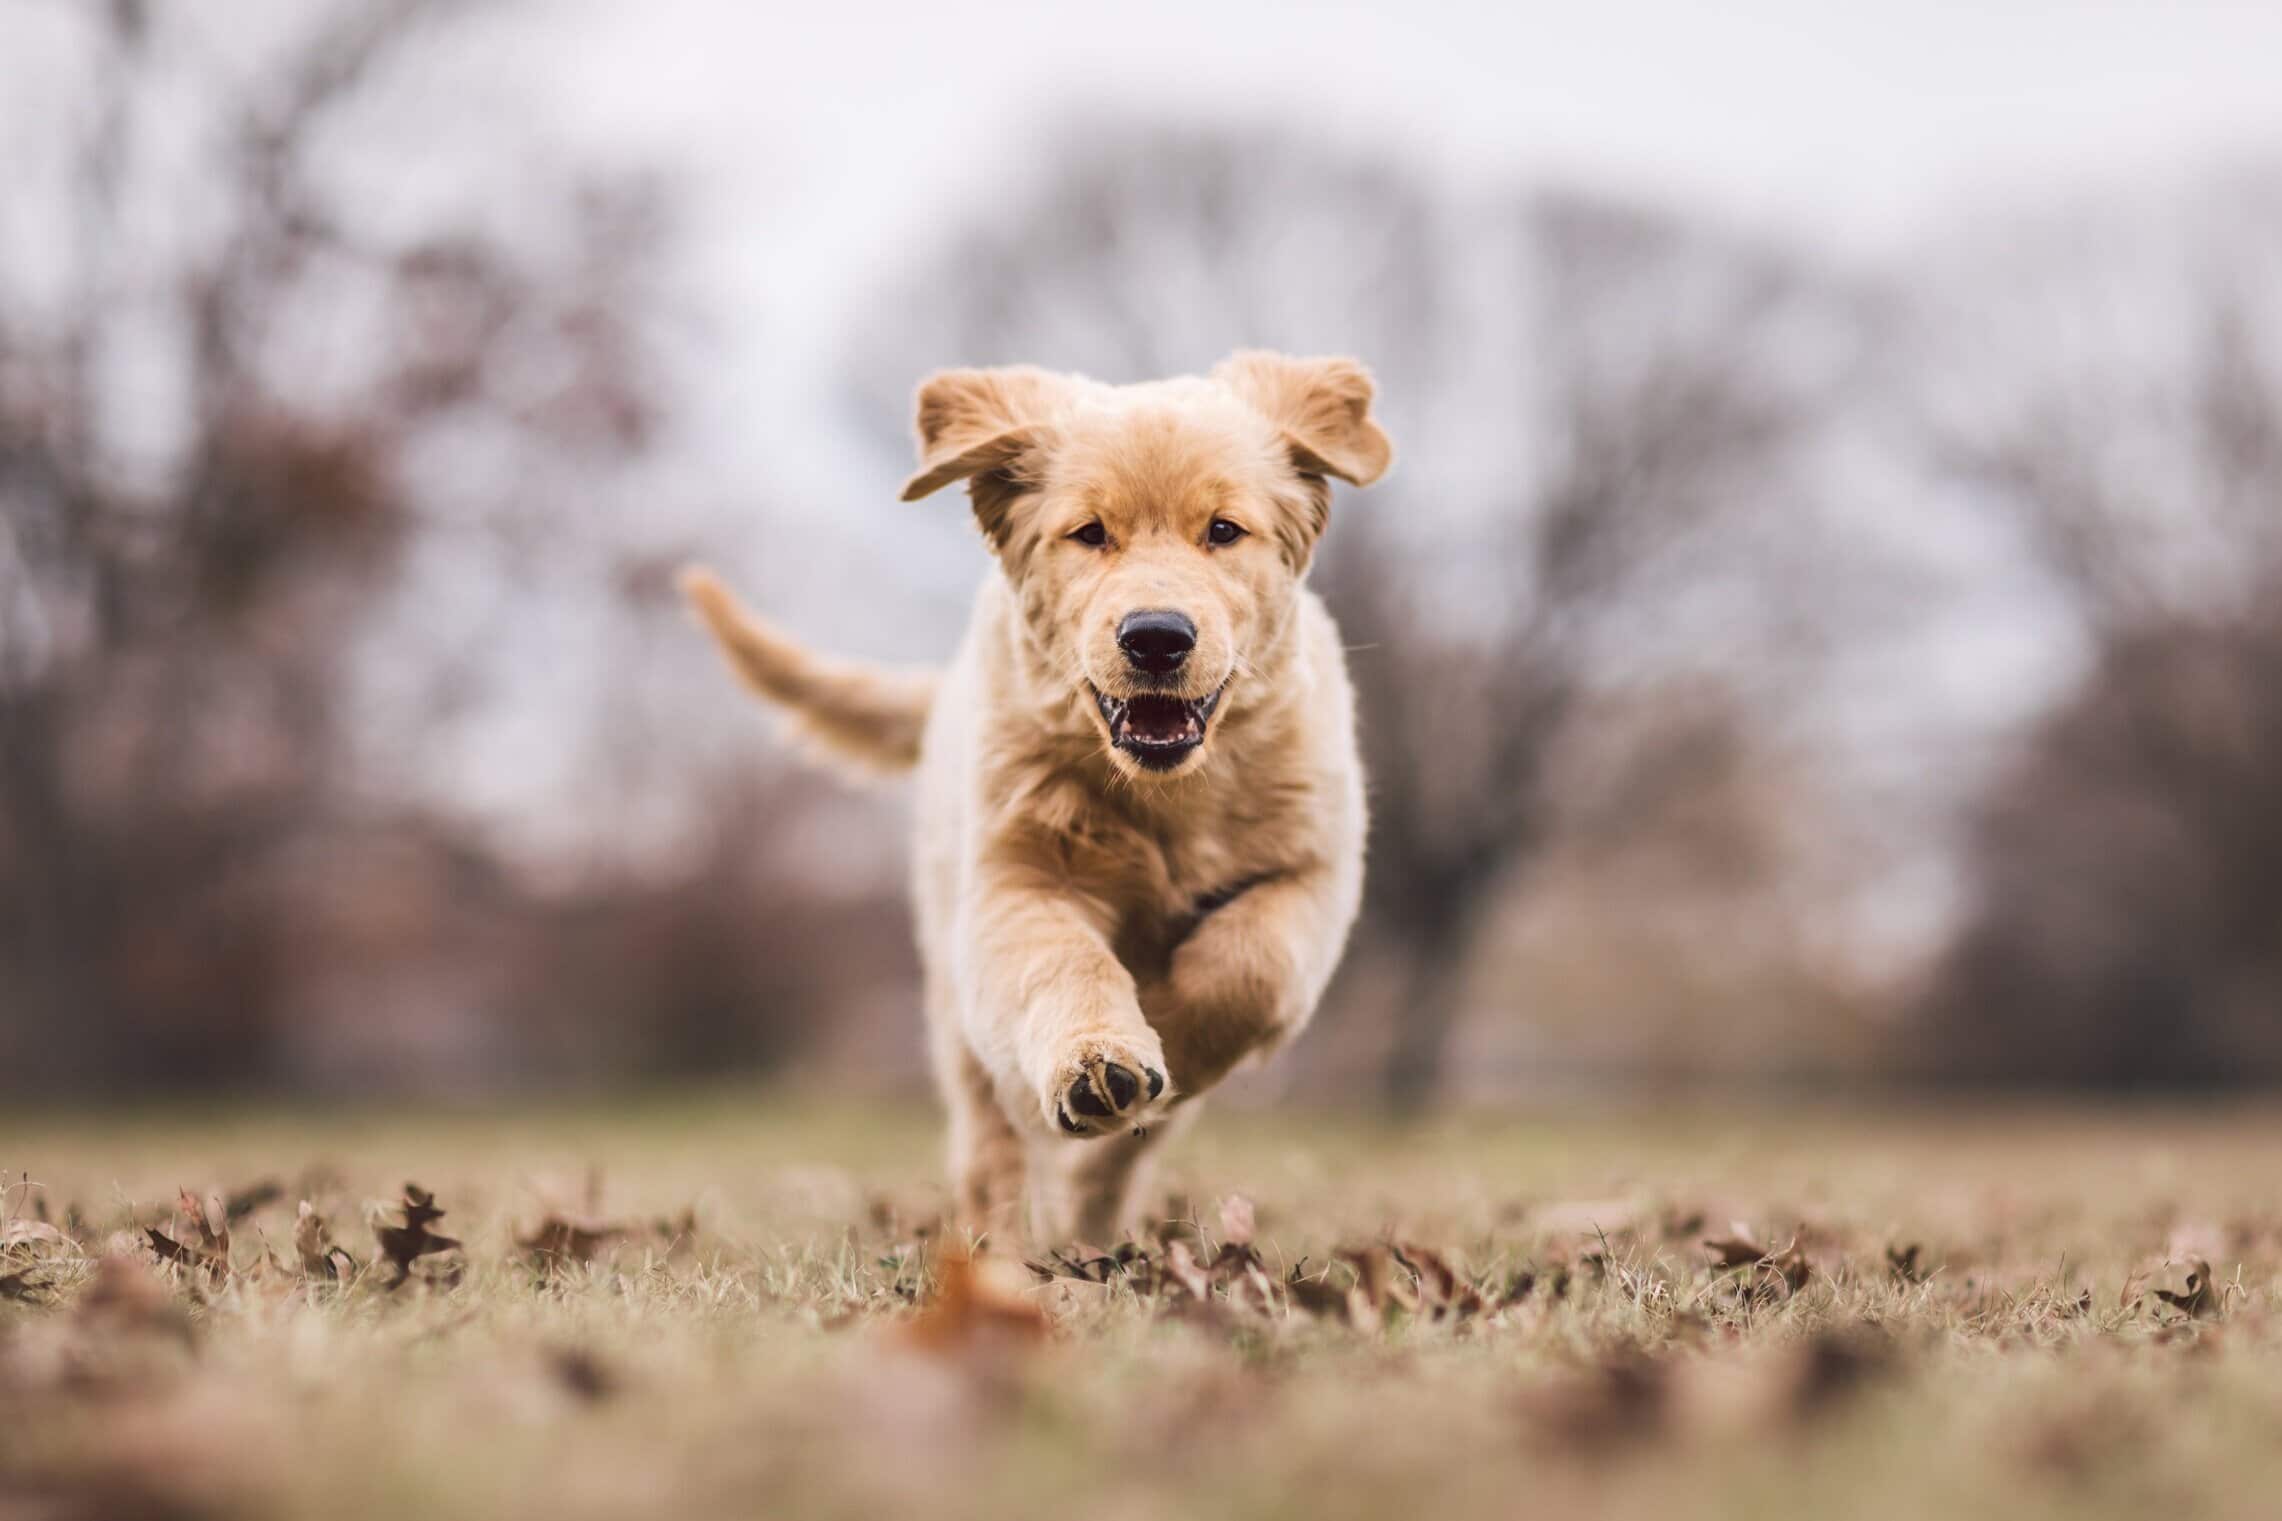 Cute golden retriever puppy running